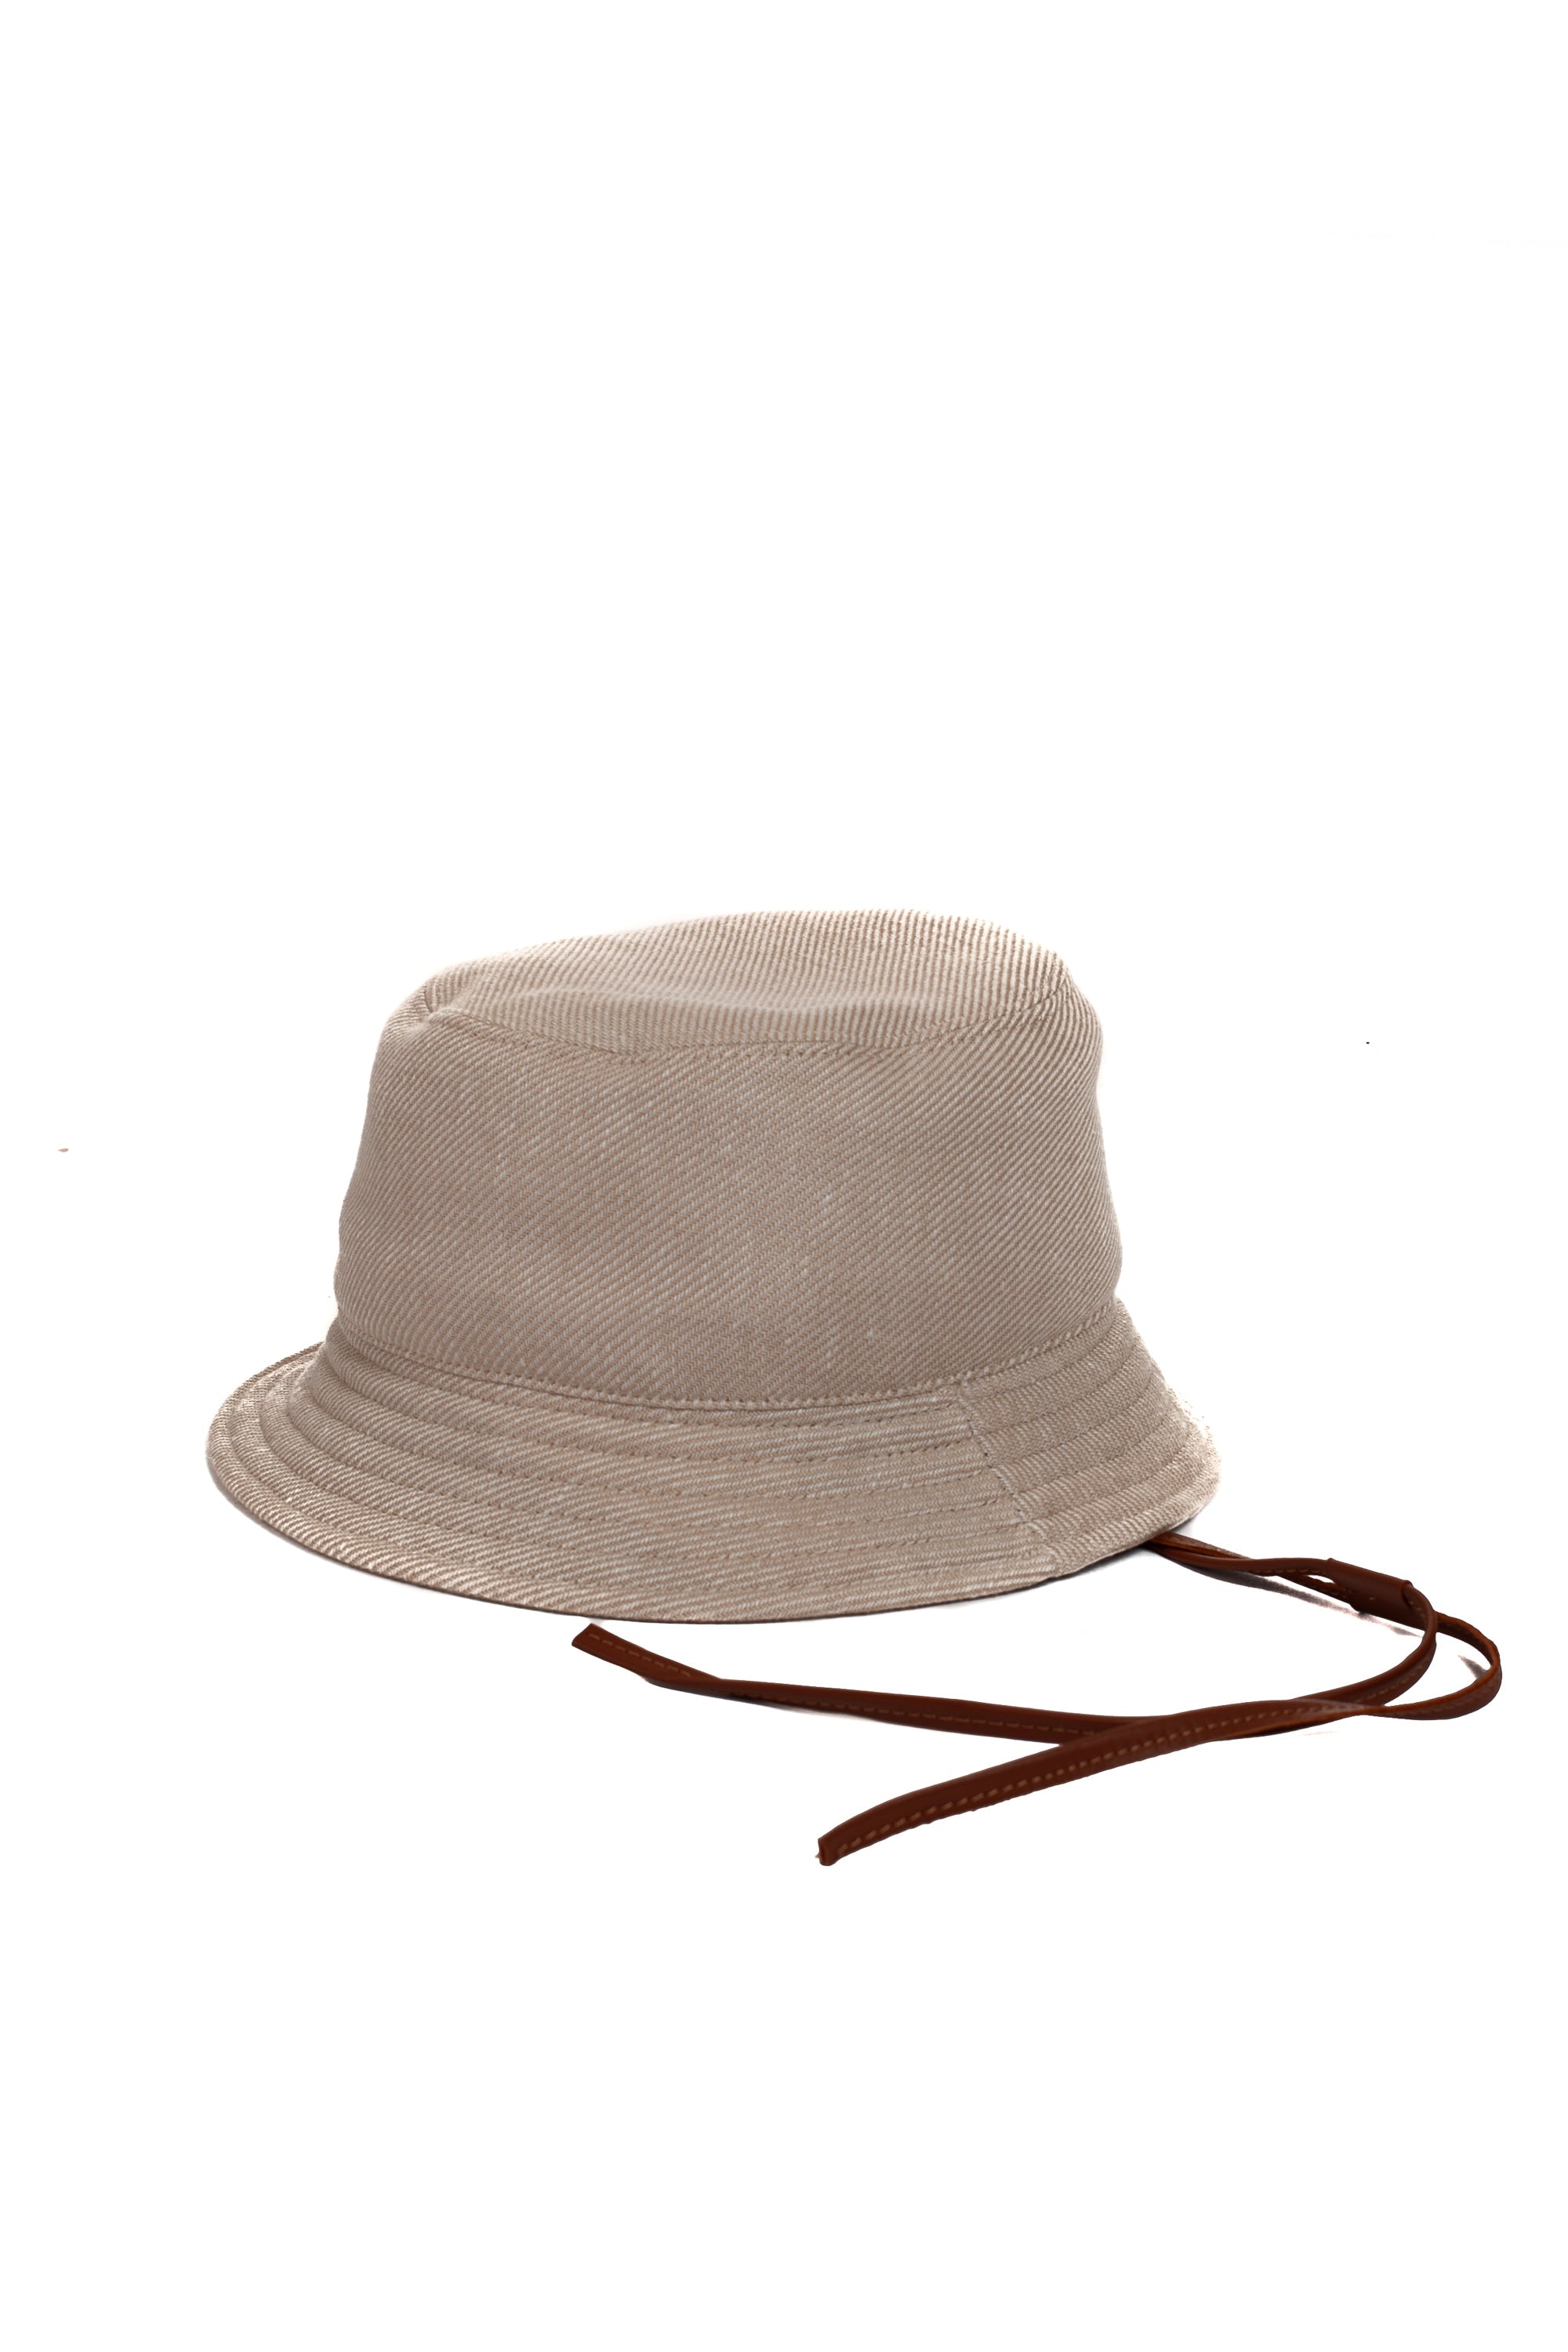 Wool-linen-silk fisherman hat